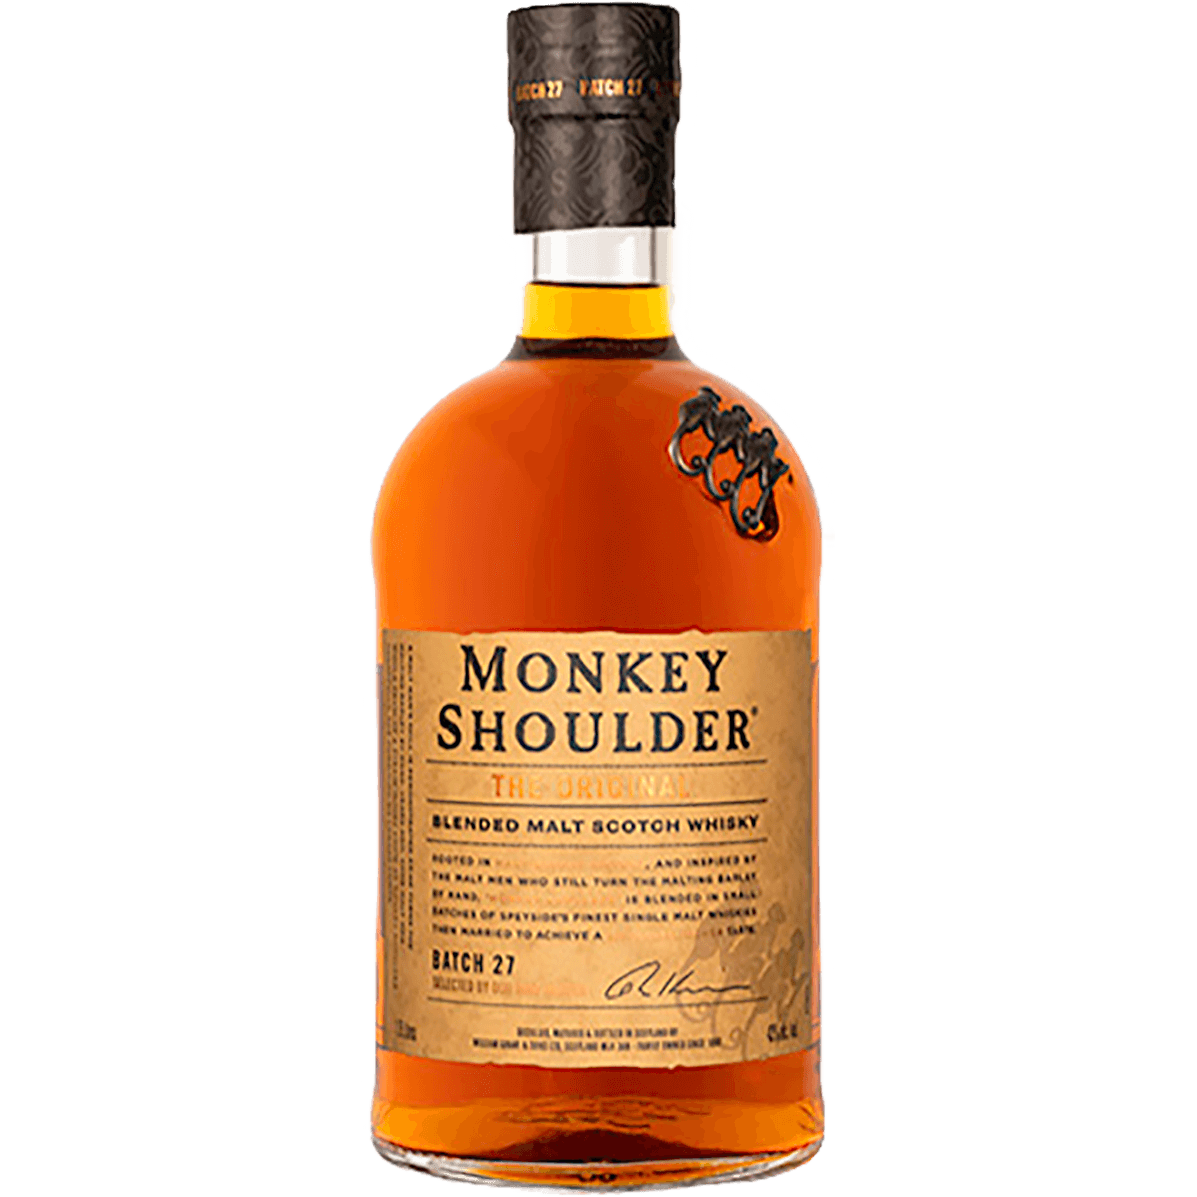 Monkey Shoulder Blended Malt Scotch Whisky, whisky monkey shoulder